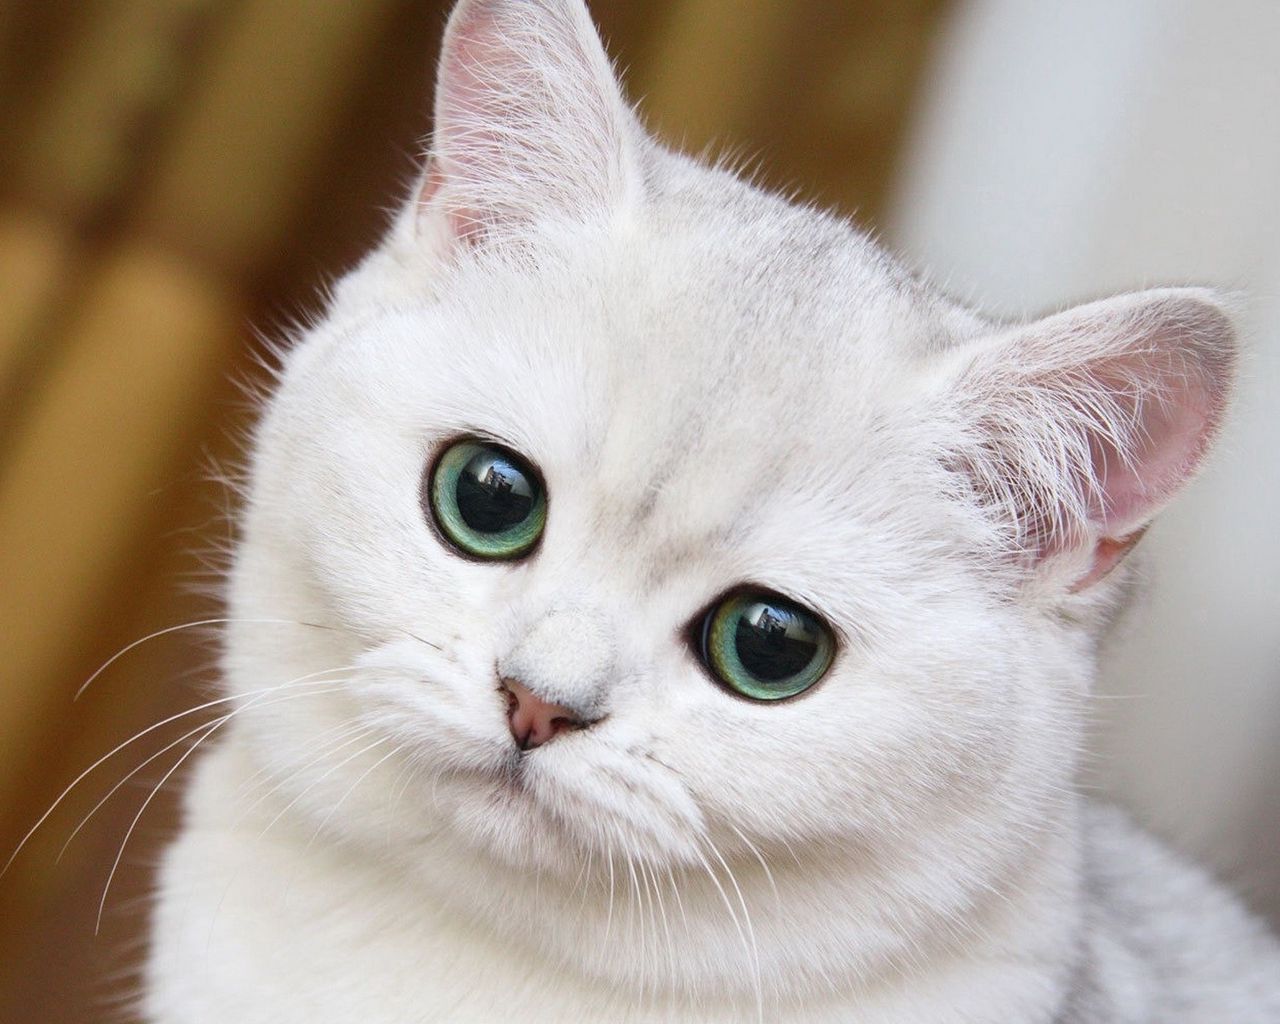 Cùng đón xem hình ảnh White cat vô cùng đáng yêu và hấp dẫn này nhé! Với lông trắng và đôi mắt to tròn, chú mèo xinh đẹp này nhất định sẽ khiến bạn mê mẩn và muốn sở hữu ngay!